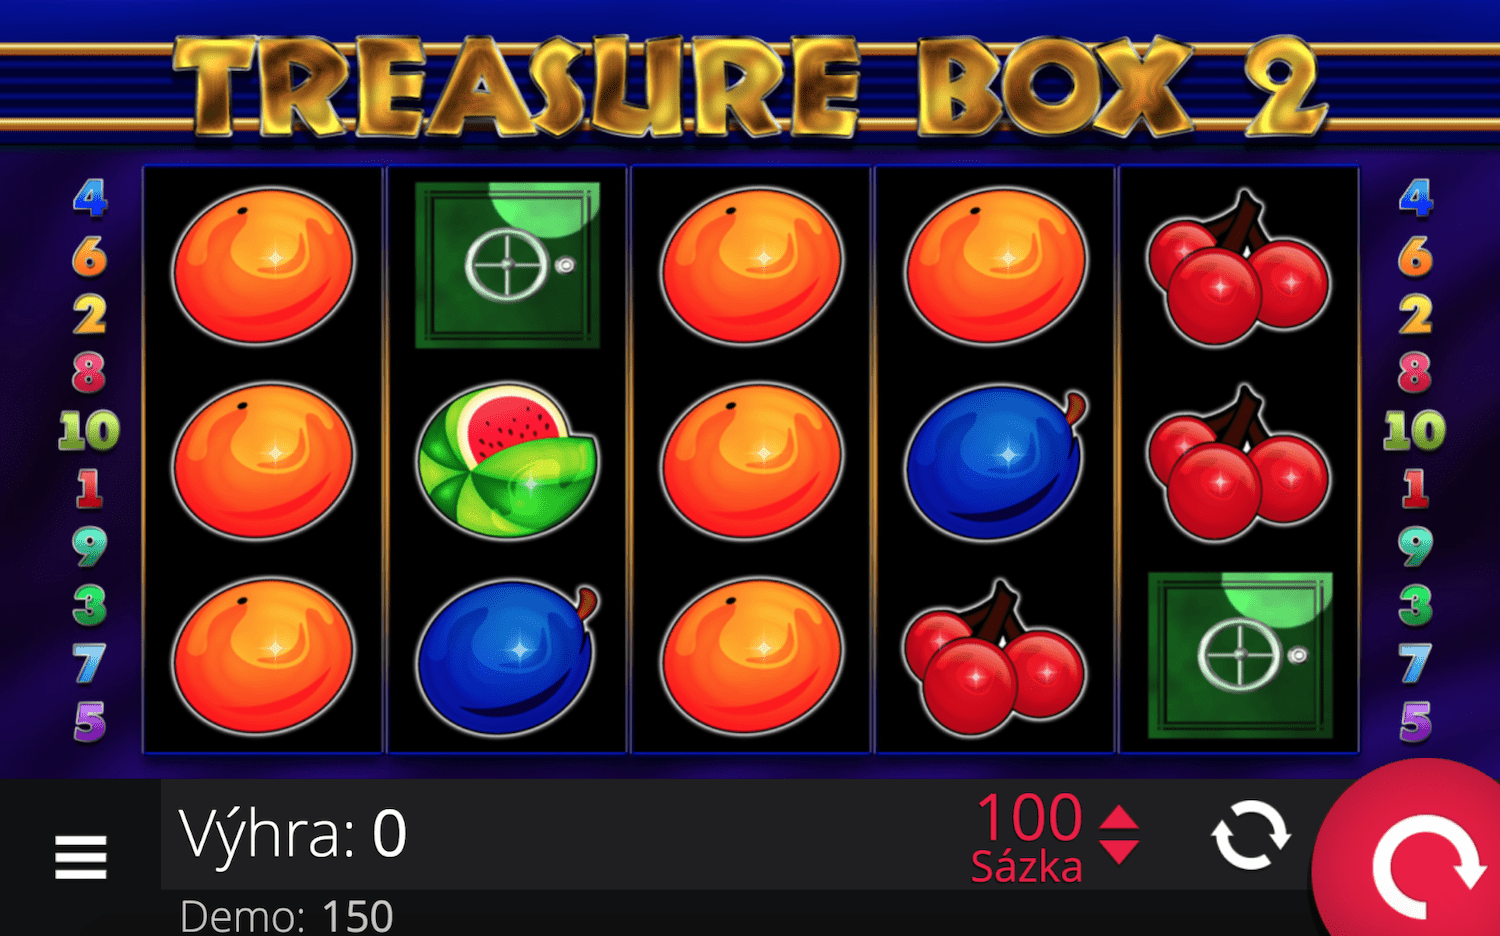 Mesin slot Treasure Box 2 dari e-gaming - contoh gulungan, simbol Trezor